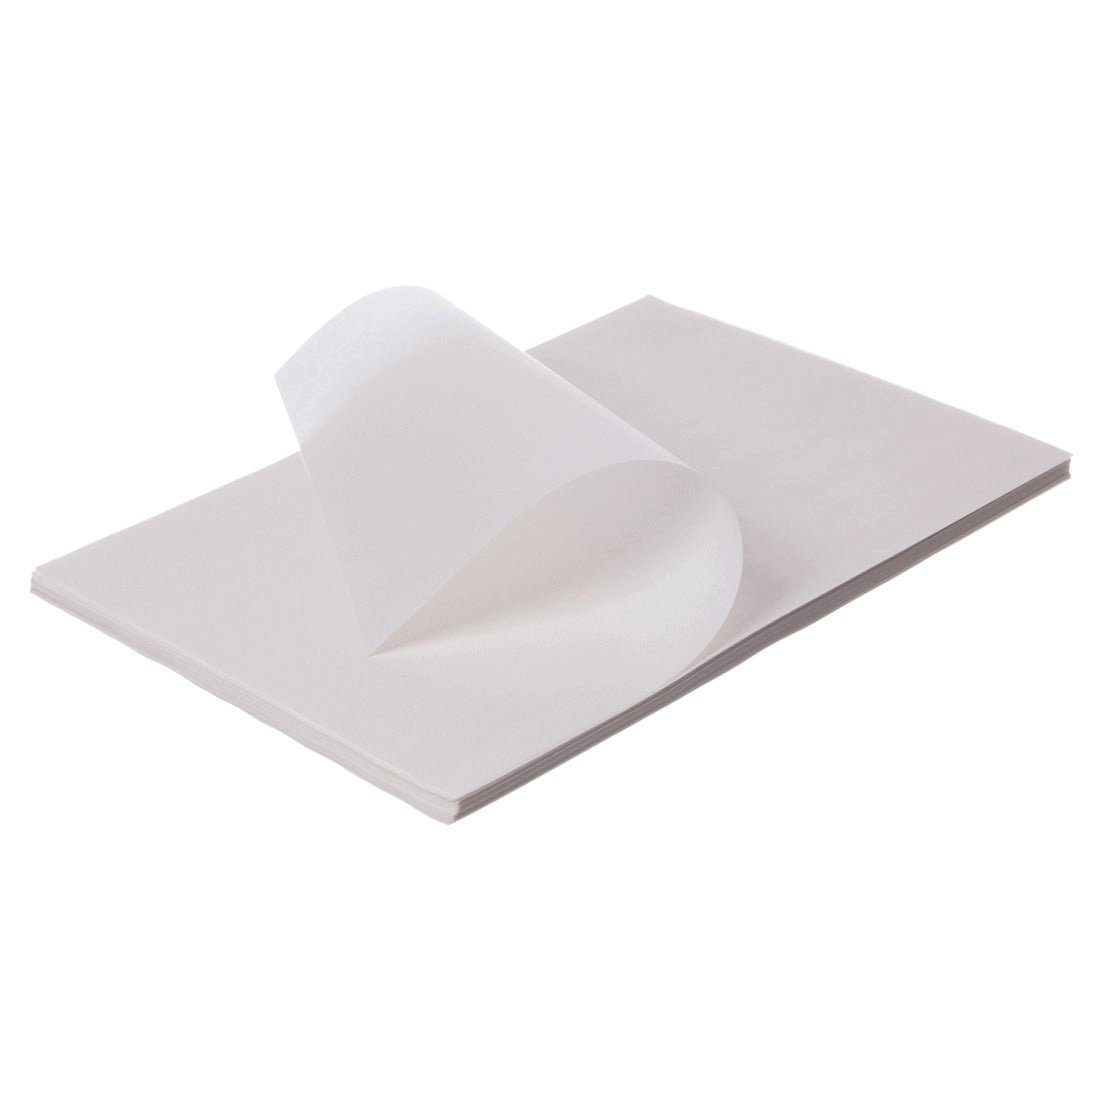 wisefood Kraftpapier Pergamentpapier - 50 x 37,5 cm - weiß/gebleicht